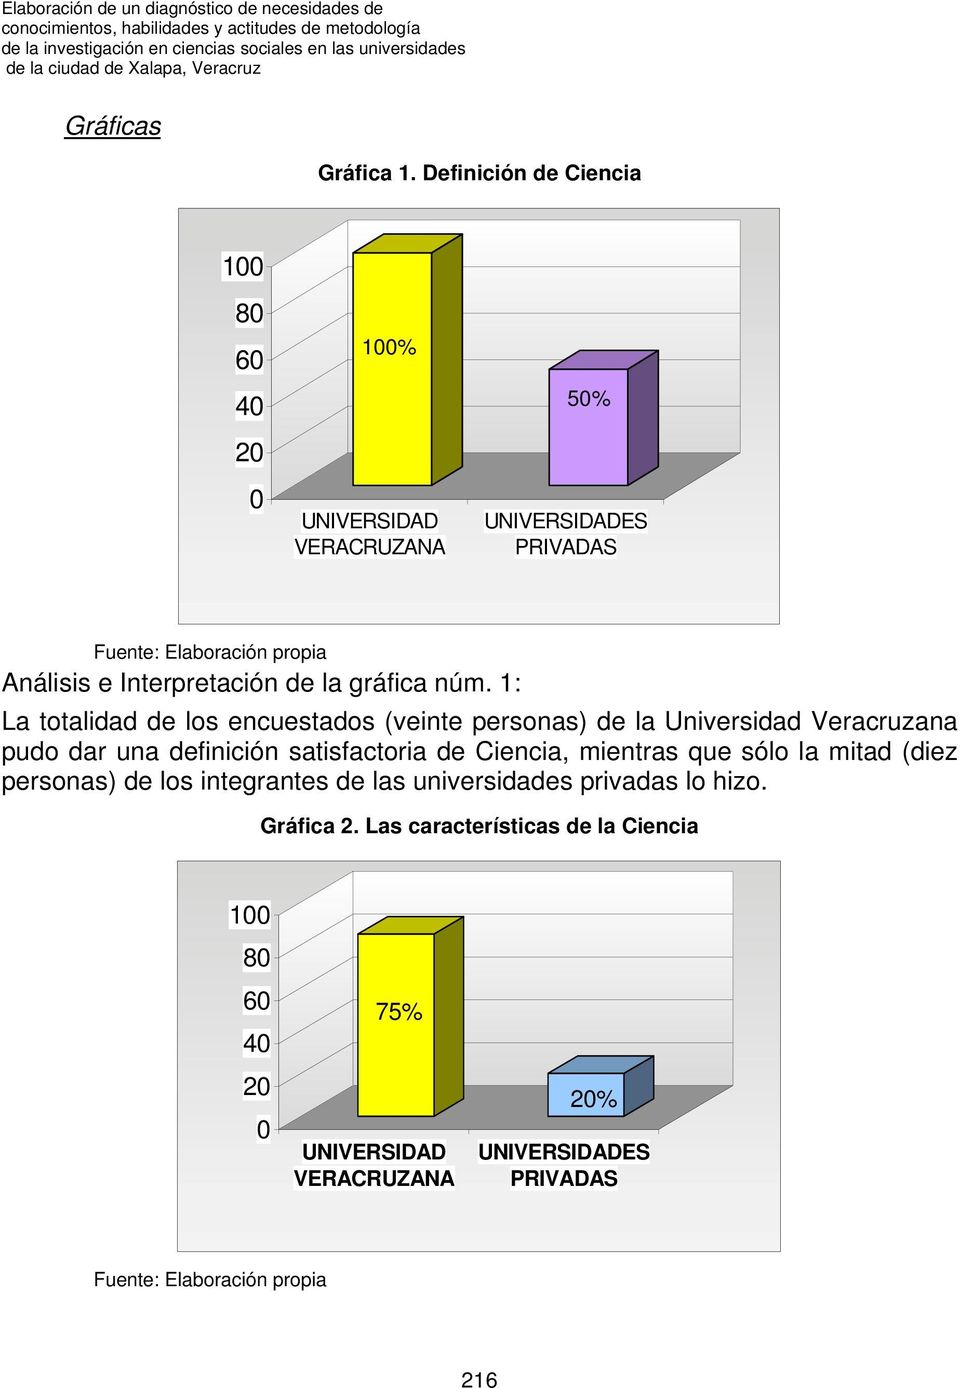 1: La totalidad de los encuestados (veinte personas) de la Universidad Veracruzana pudo dar una definición satisfactoria de Ciencia, mientras que